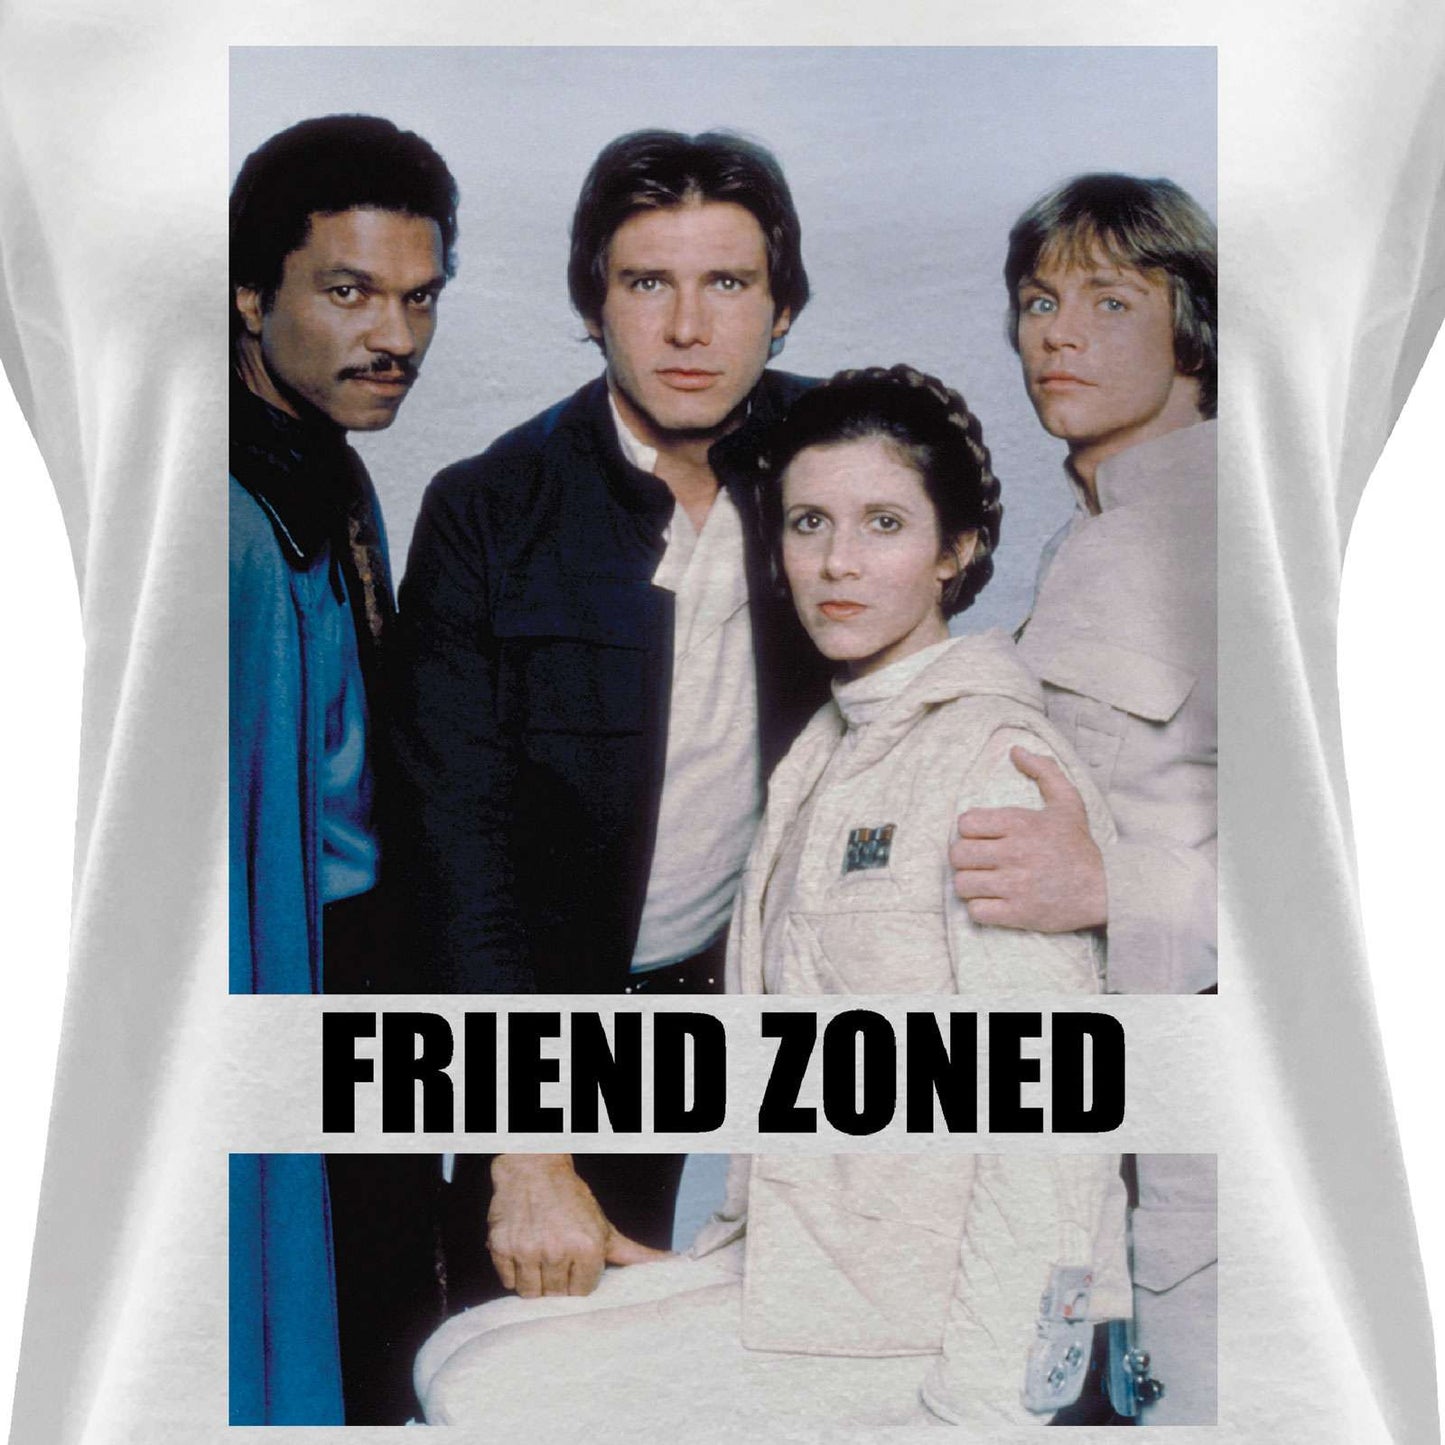 Star Wars Women's T-shirt - Friend Zoned